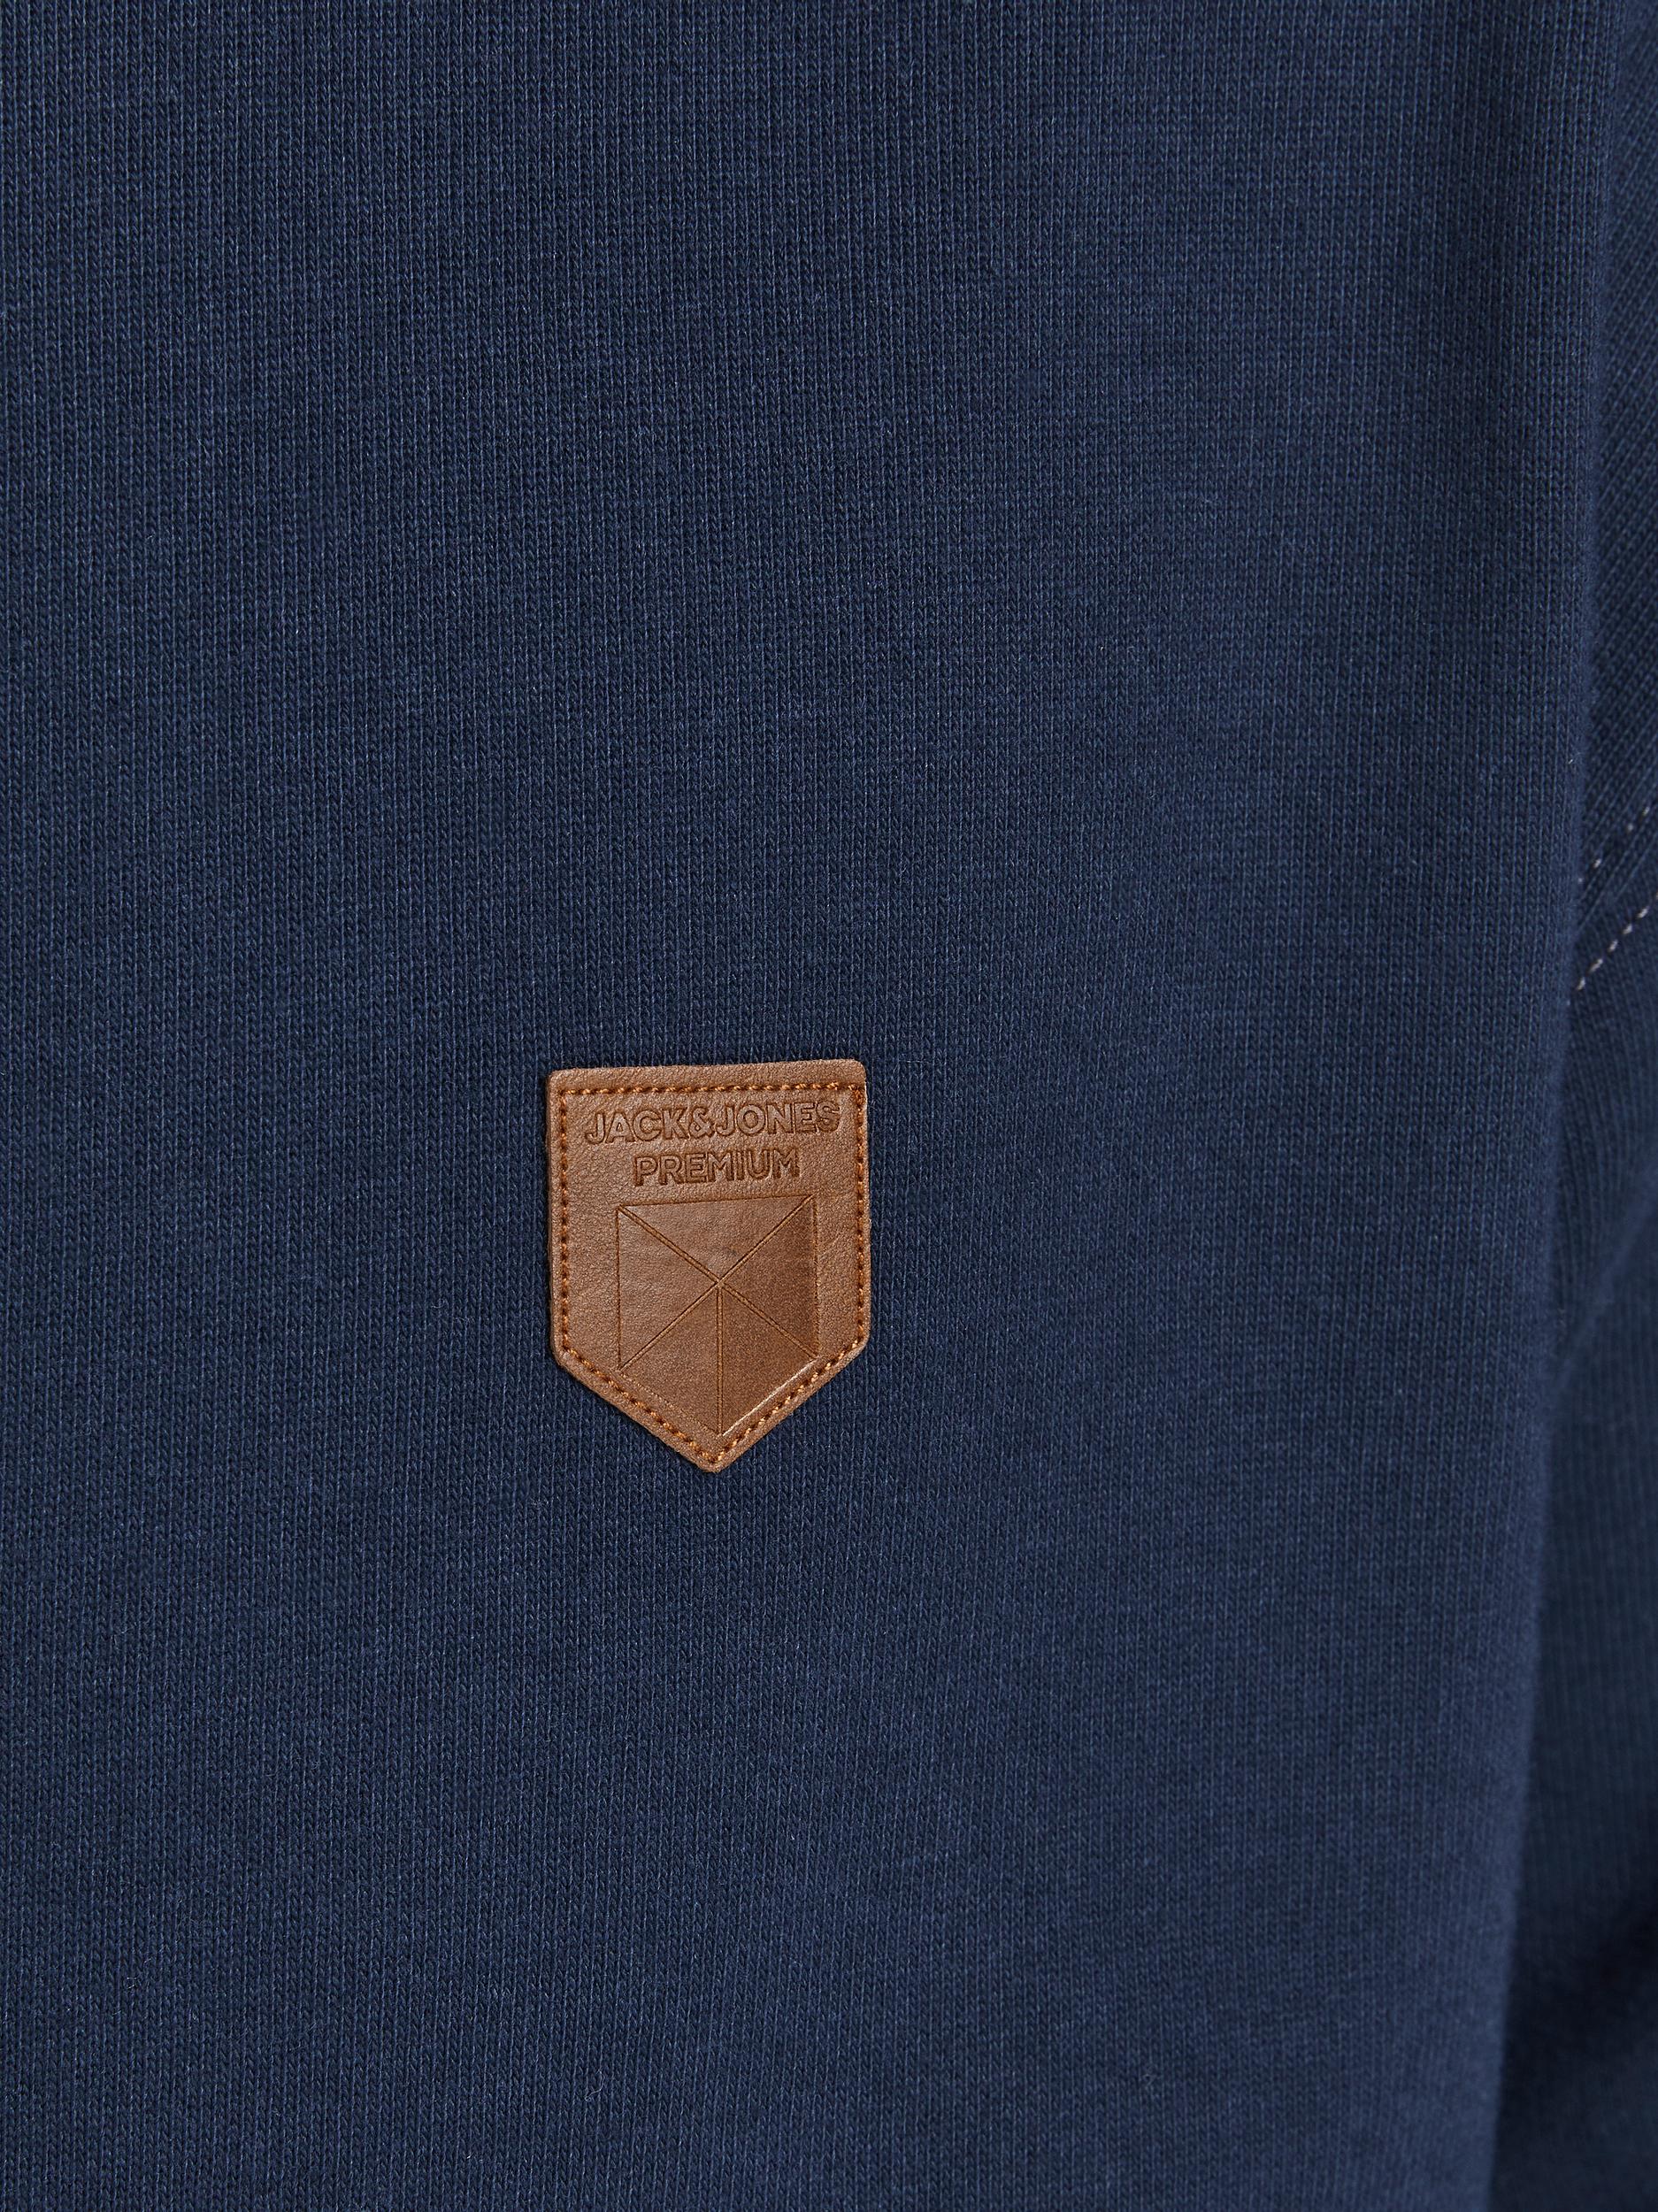 Odzież Mężczyźni JACK & JONES Bluzka sportowa Bludan w kolorze Granatowym 